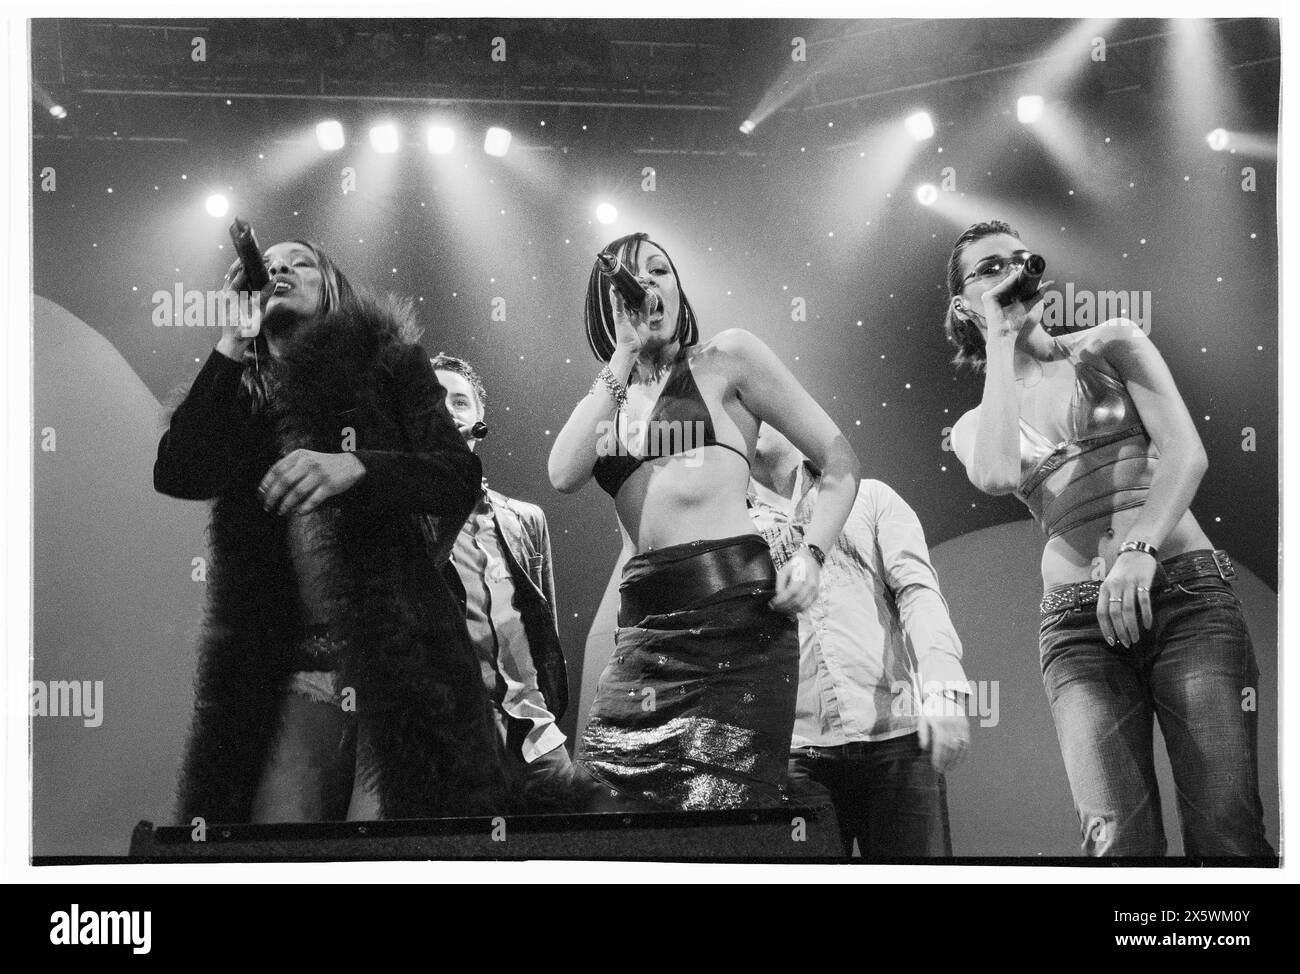 LIBERTY X, TUTTA LA BAND, CONCERTO, 2001: Tutti e 5 i membri dei Liberty X si esibiscono dal vivo durante il loro primo tour nel Regno Unito con lo Smash Hits Tour alla Cardiff International Arena, CIA, Cardiff, Galles, Regno Unito il 4 dicembre 2001. Foto: Rob Watkins. INFO: Liberty X, un gruppo pop britannico-irlandese formato nel 2001 nello show televisivo Popstars, ha ottenuto successo con successi come Just a Little e Thinking IT Over. Le loro esibizioni energiche e le melodie accattivanti li hanno resi un punto fermo della scena pop dei primi anni '2000. Foto Stock